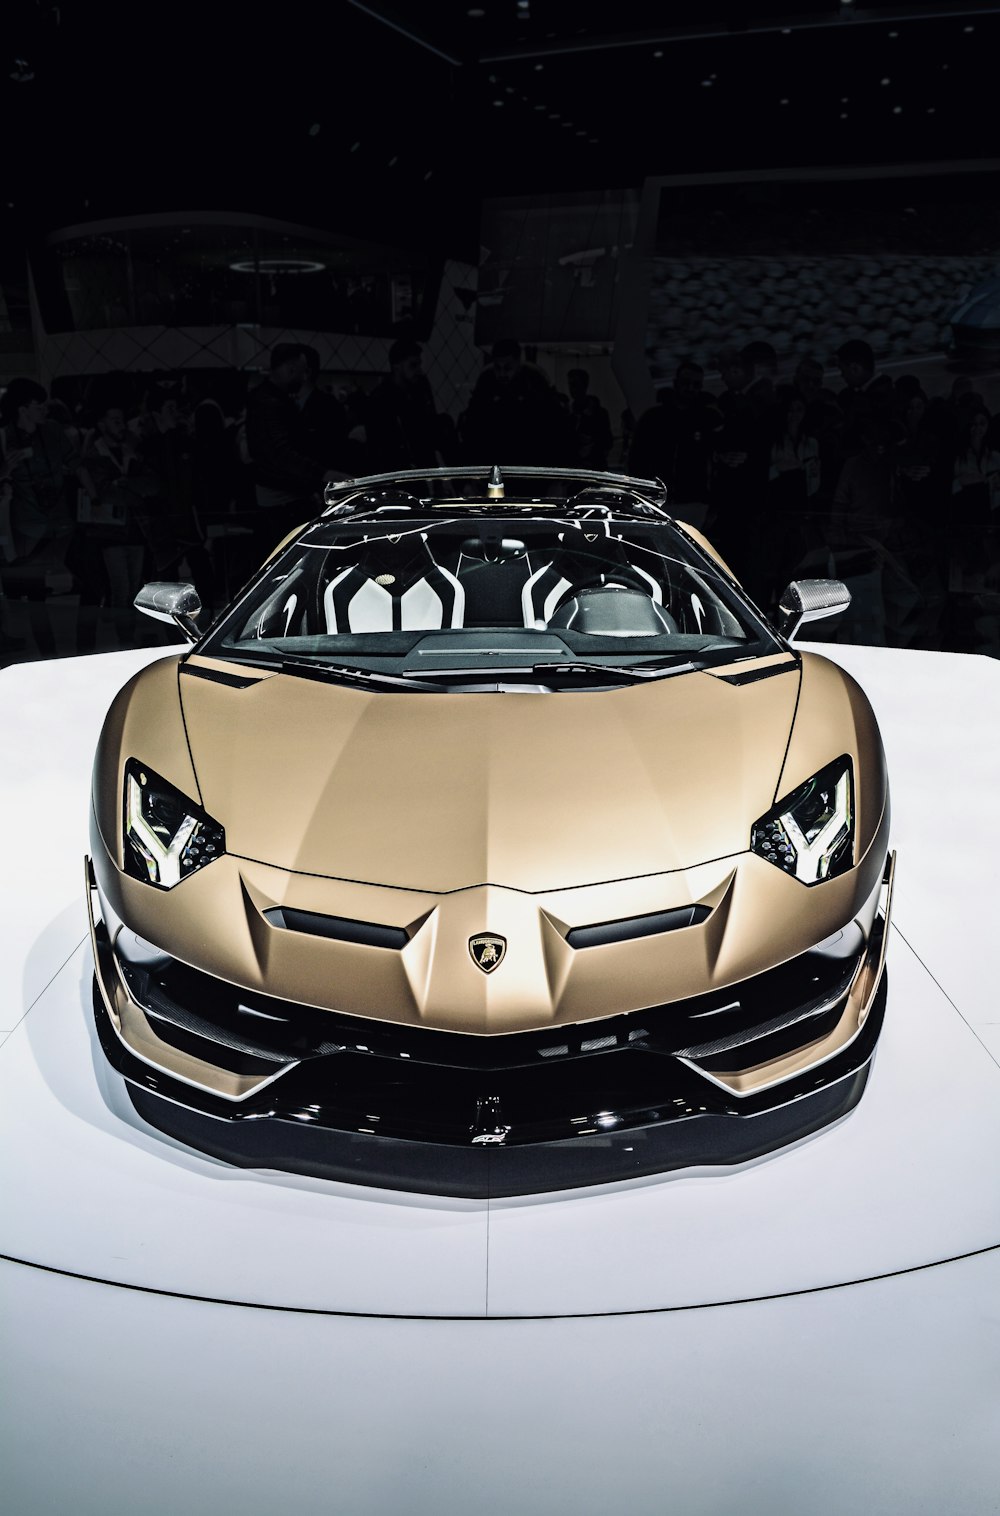 Coche deportivo Lamborghini marrón